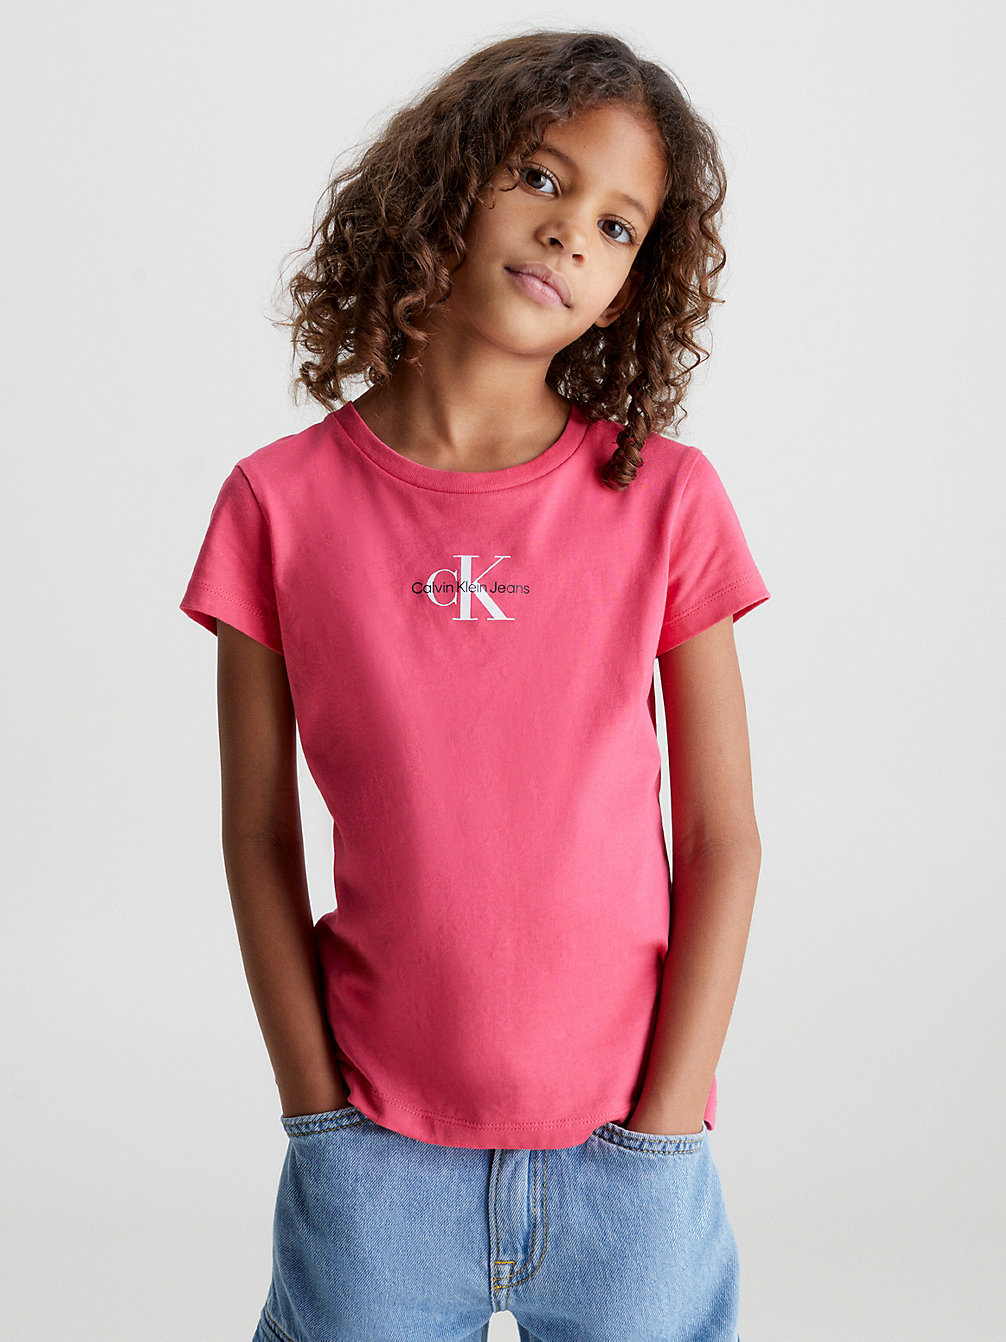 PINK FLASH Slim Organic Cotton T-Shirt undefined girls Calvin Klein